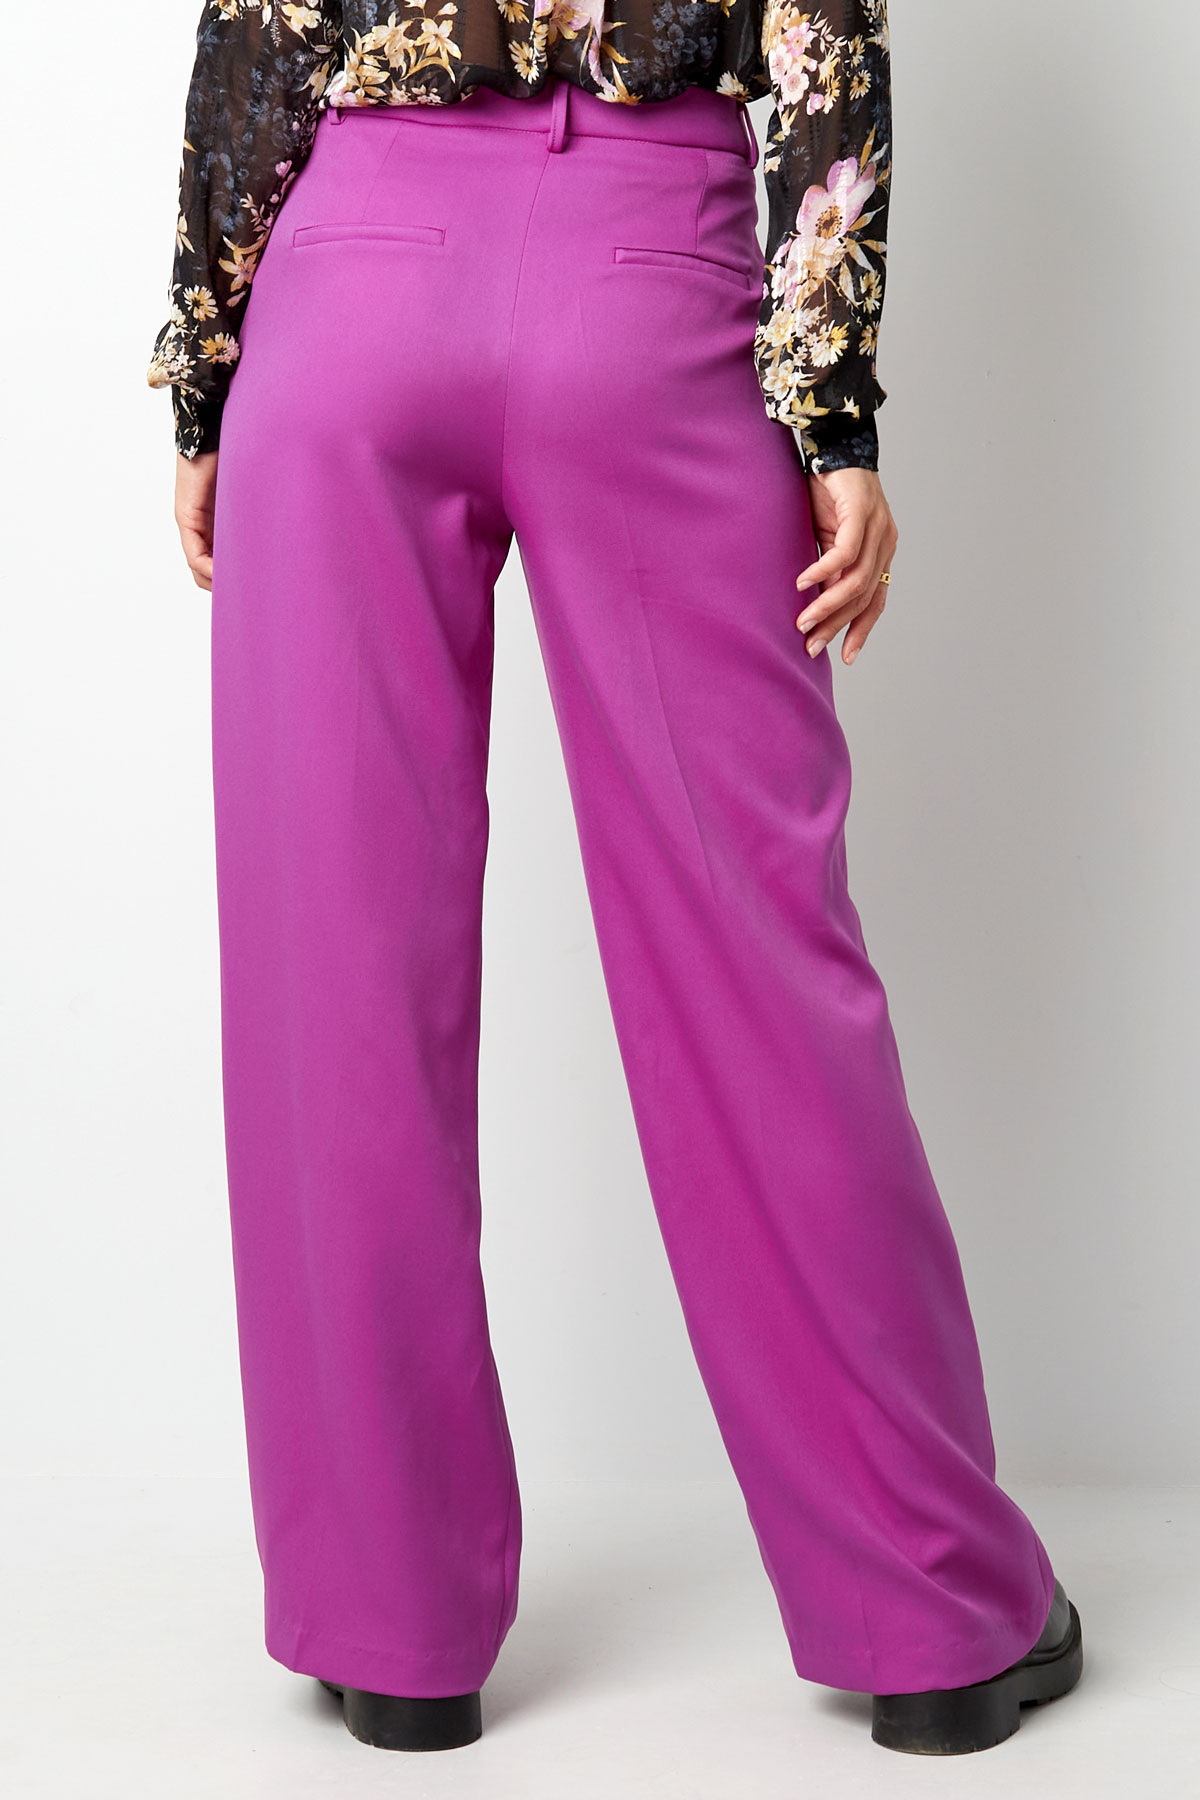 Pantalón plisado - violeta h5 Imagen12